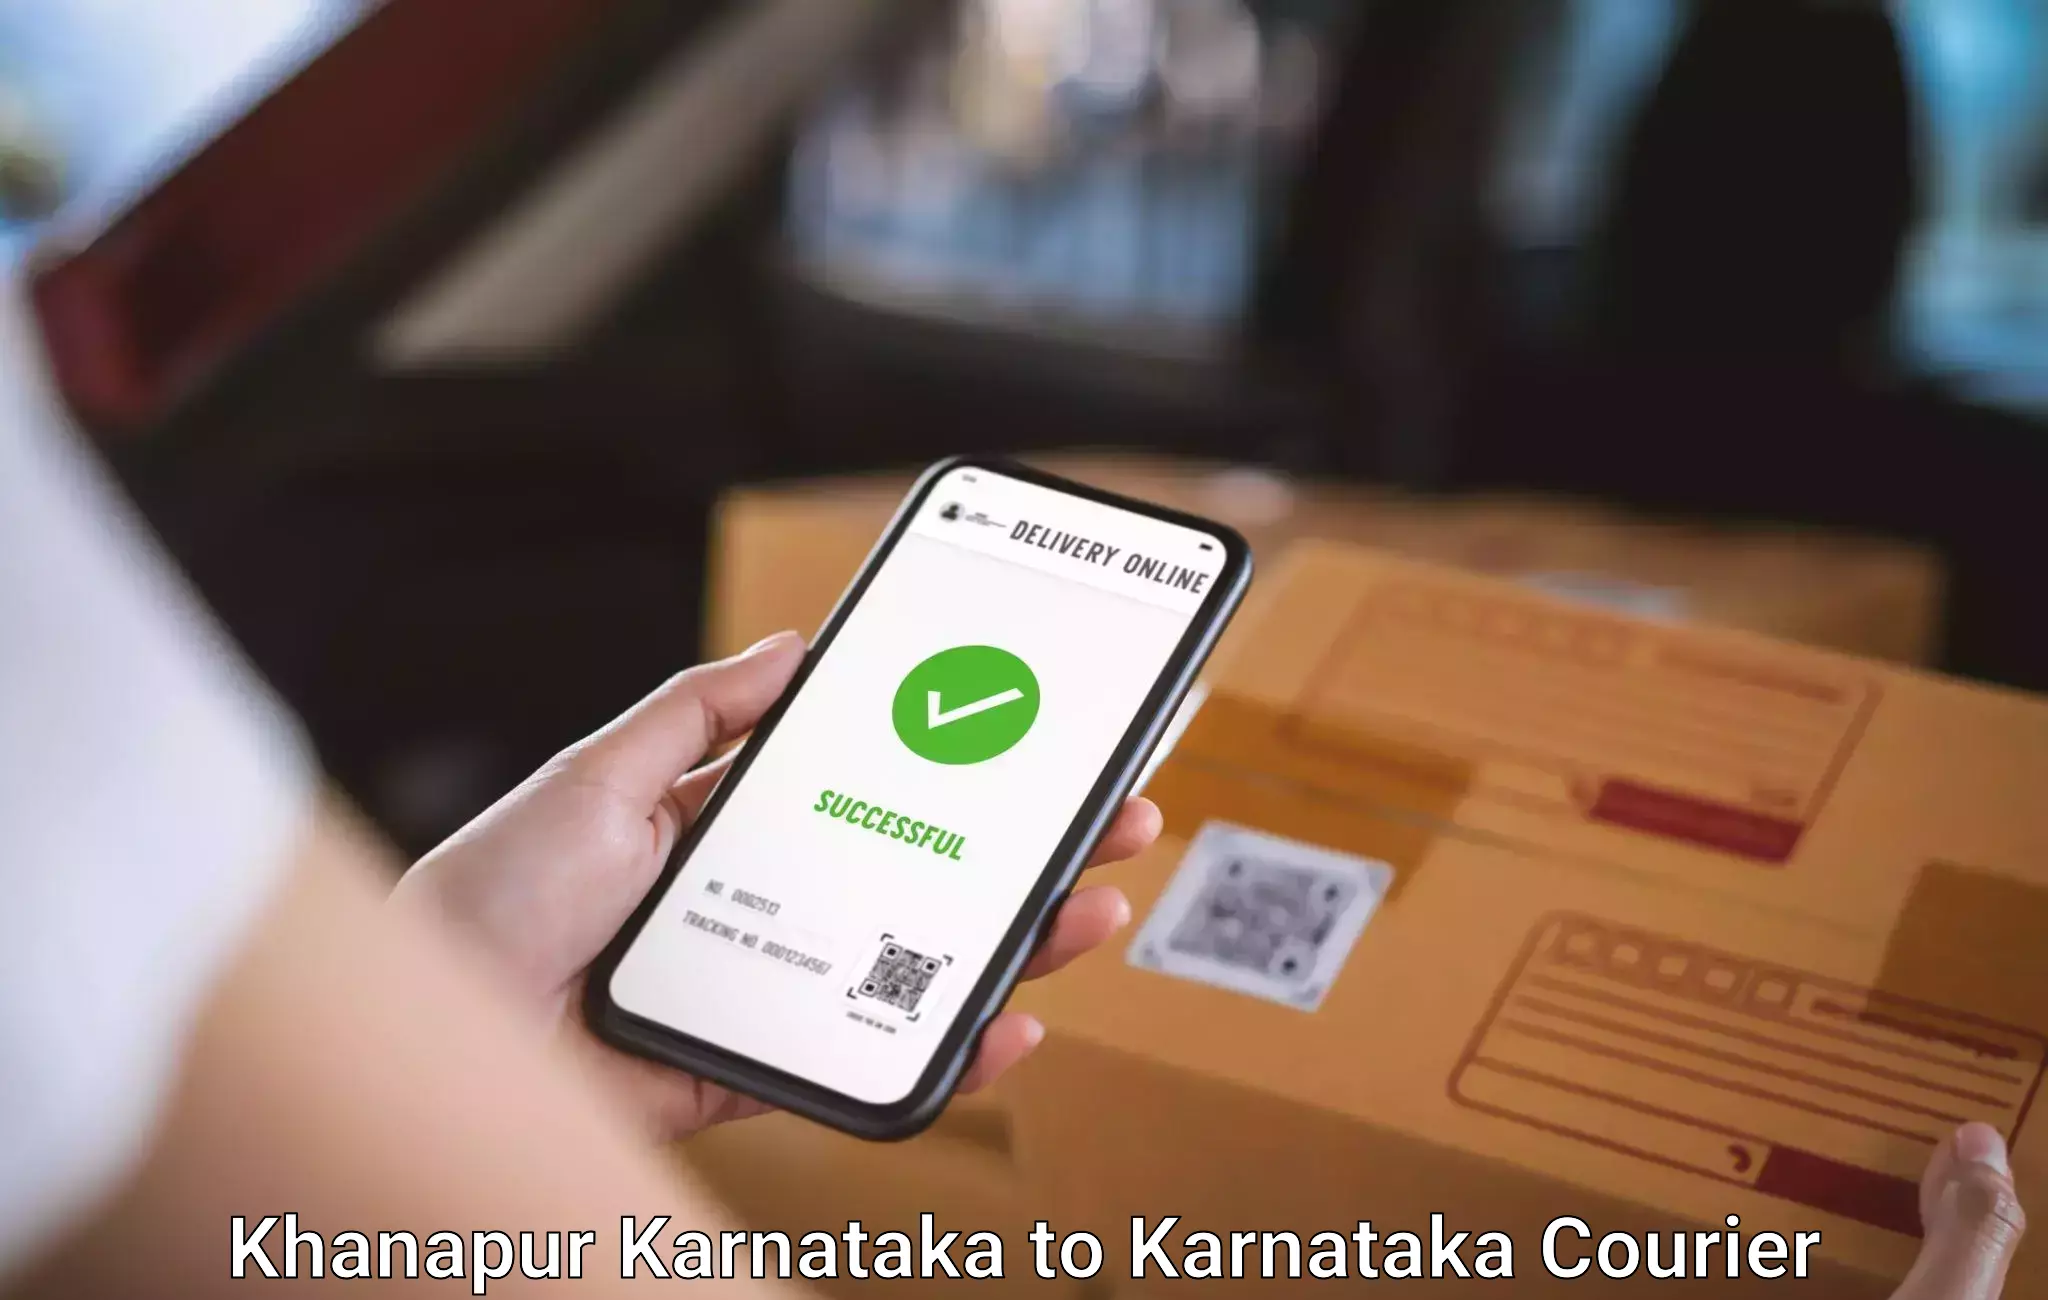 Baggage courier solutions Khanapur Karnataka to Mulbagal